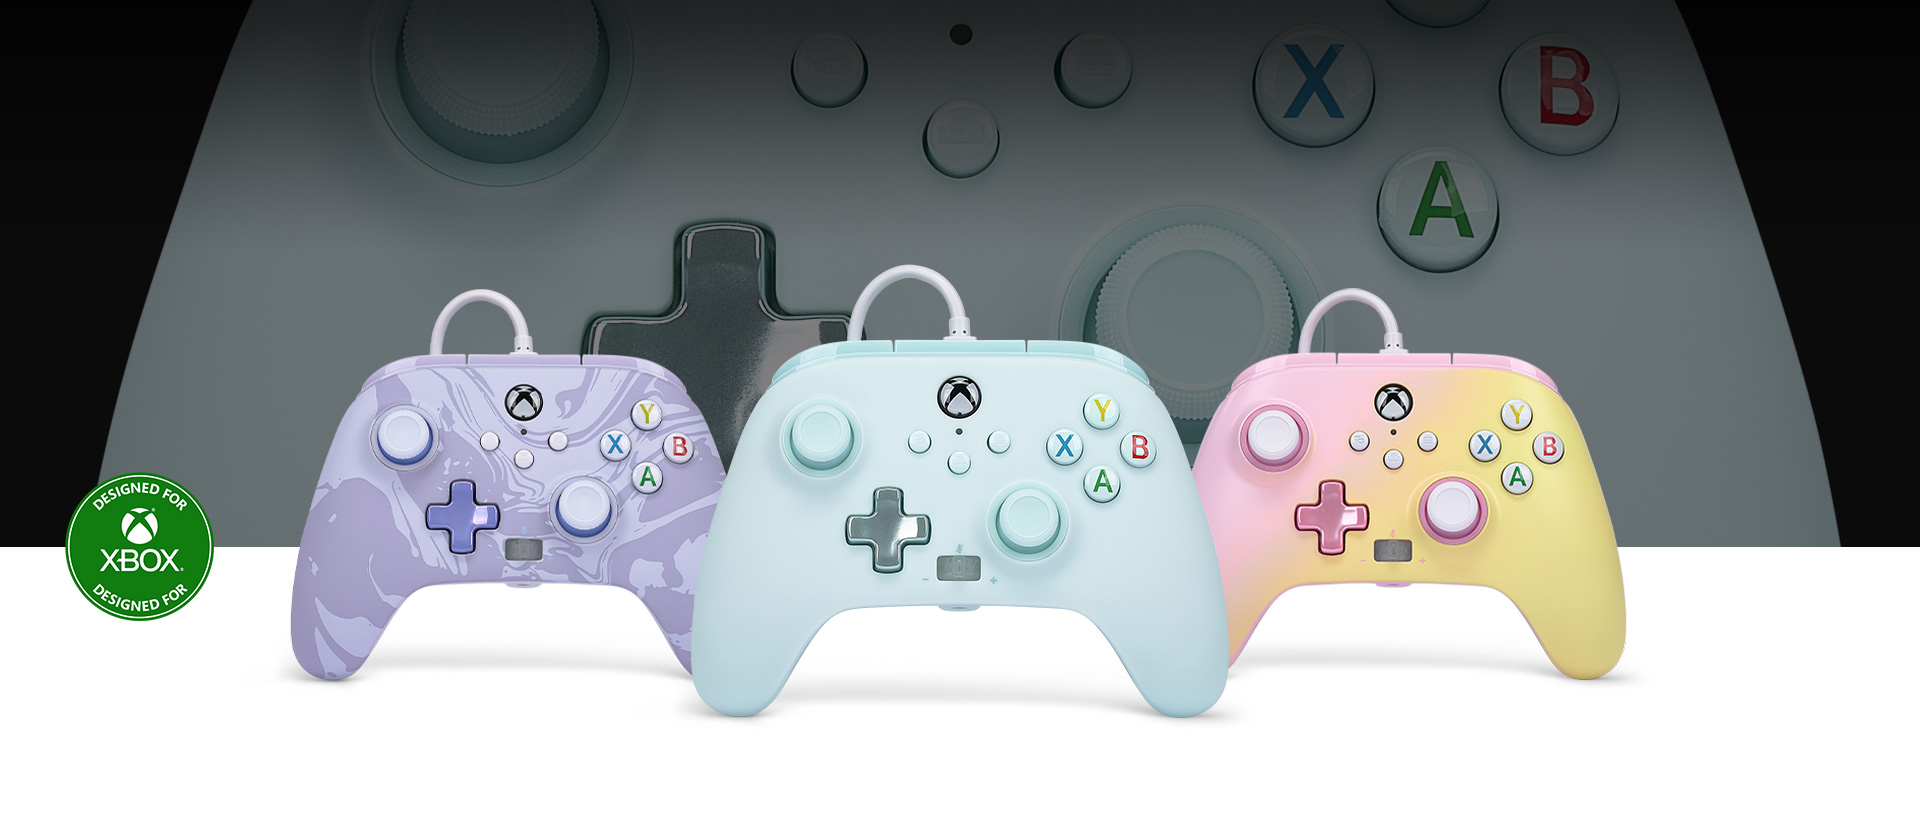 Logo Progettato per Xbox, un controller di colore Celeste zucchero filato in primo piano rispetto ai controller Viola mimetico e Limonata rosa ai lati